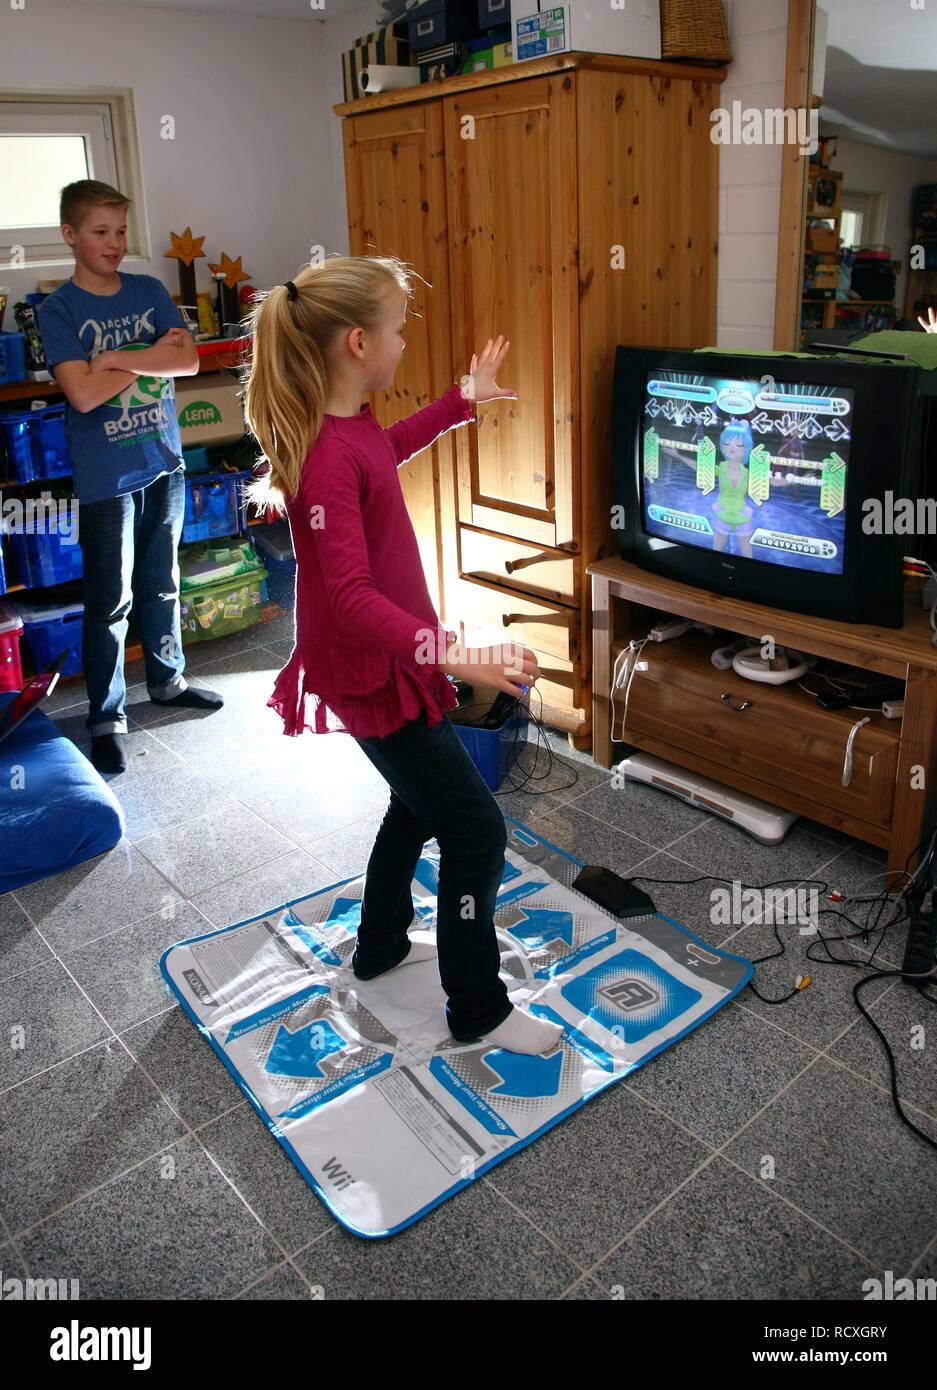 Frères et sœurs, un garçon, 12 ans, et une fille, 10 ans, de jouer à un jeu  de danse sur Wii une console de jeux dans leur chambre ensemble Photo Stock  - Alamy